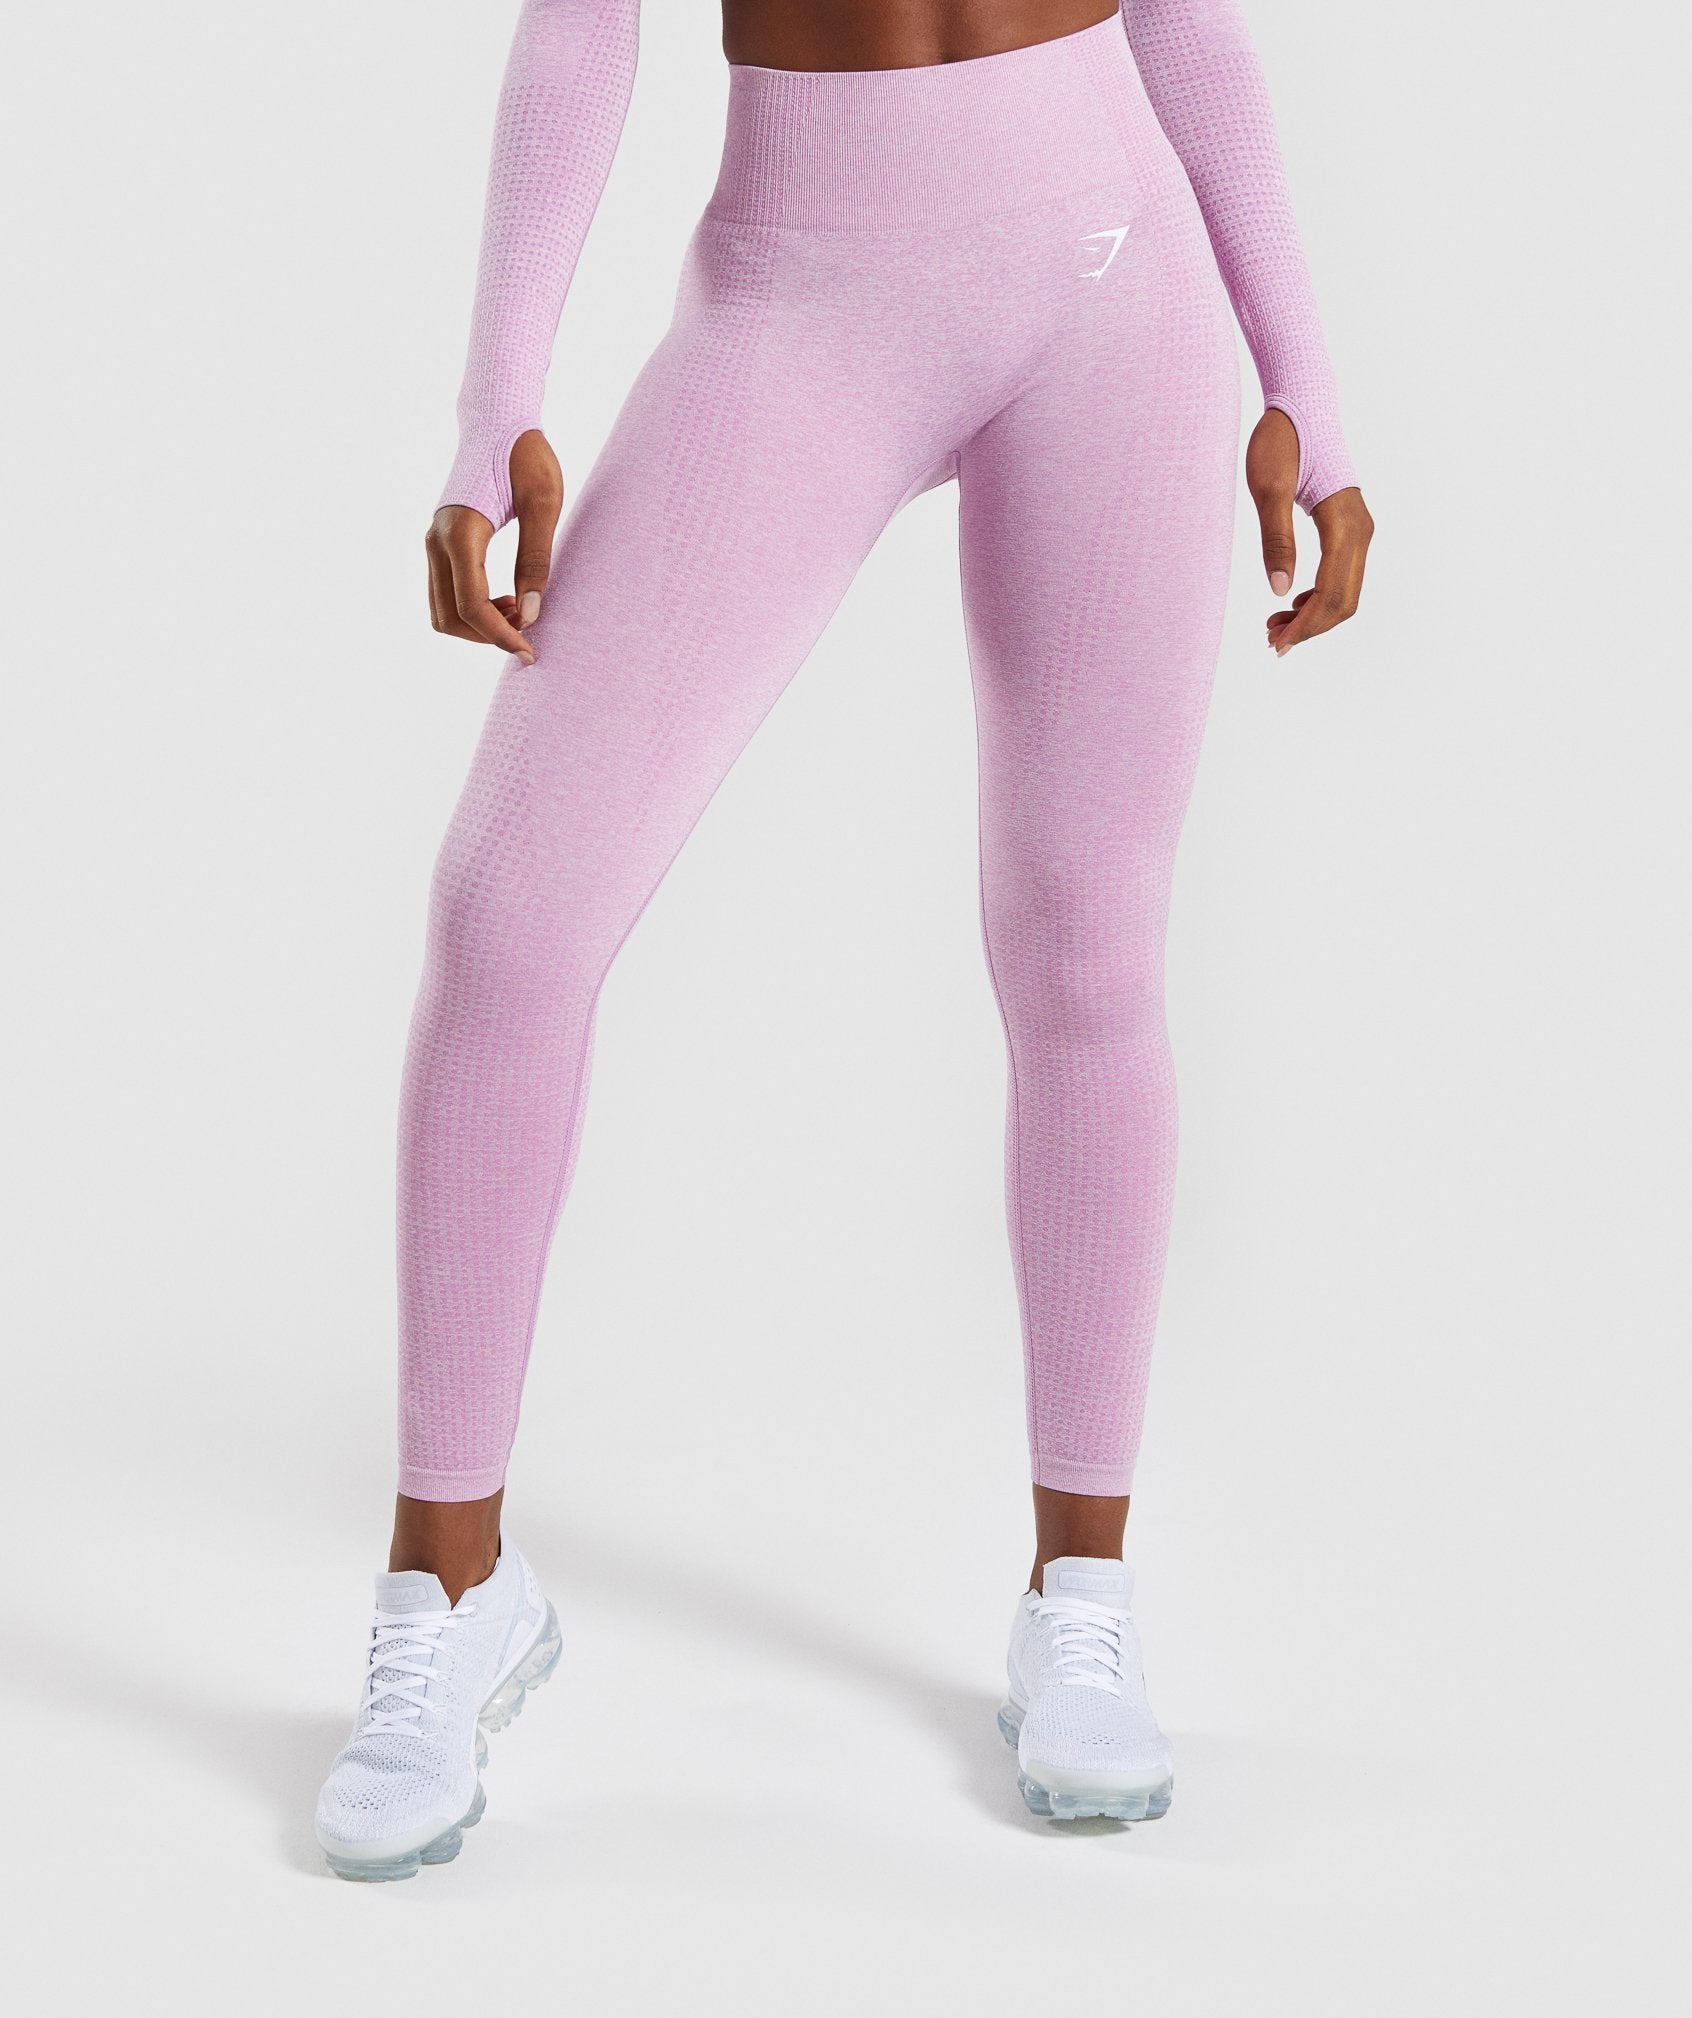 Gymshark - Pink Gym Shark Leggings on Designer Wardrobe